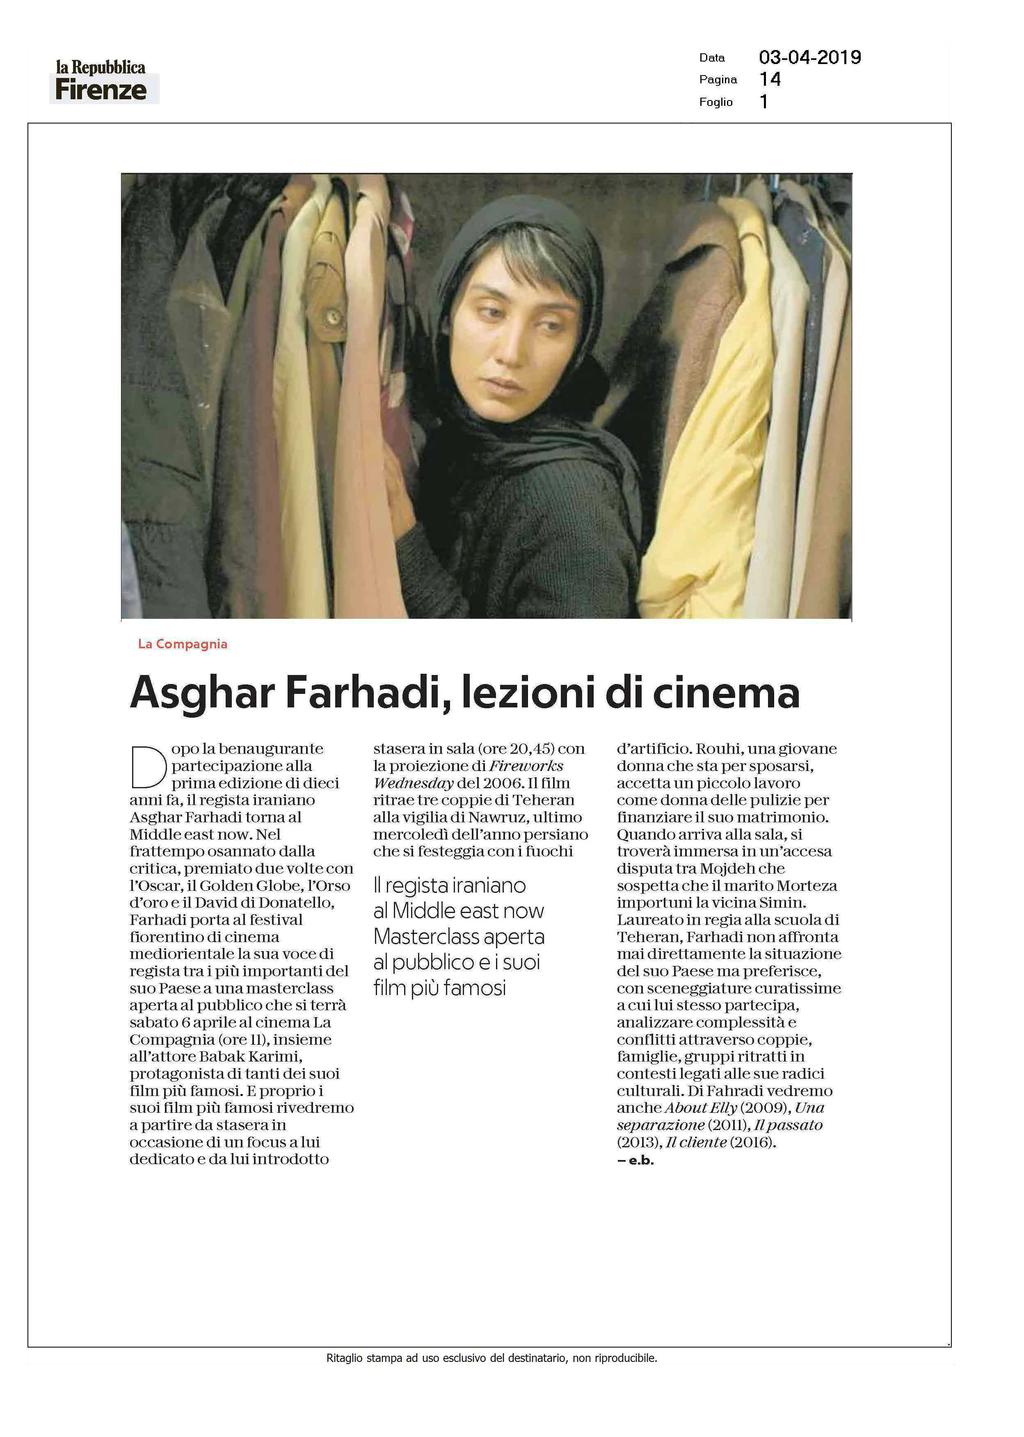 Firenze Pagina 14 i La Compagnia Asghar Farhadi, lezioni di cinema opo la benaugurante D partecipazione alla prima edizione di dieci anni fa, il regista iraniano Asghar Farhadi torna al Middle east